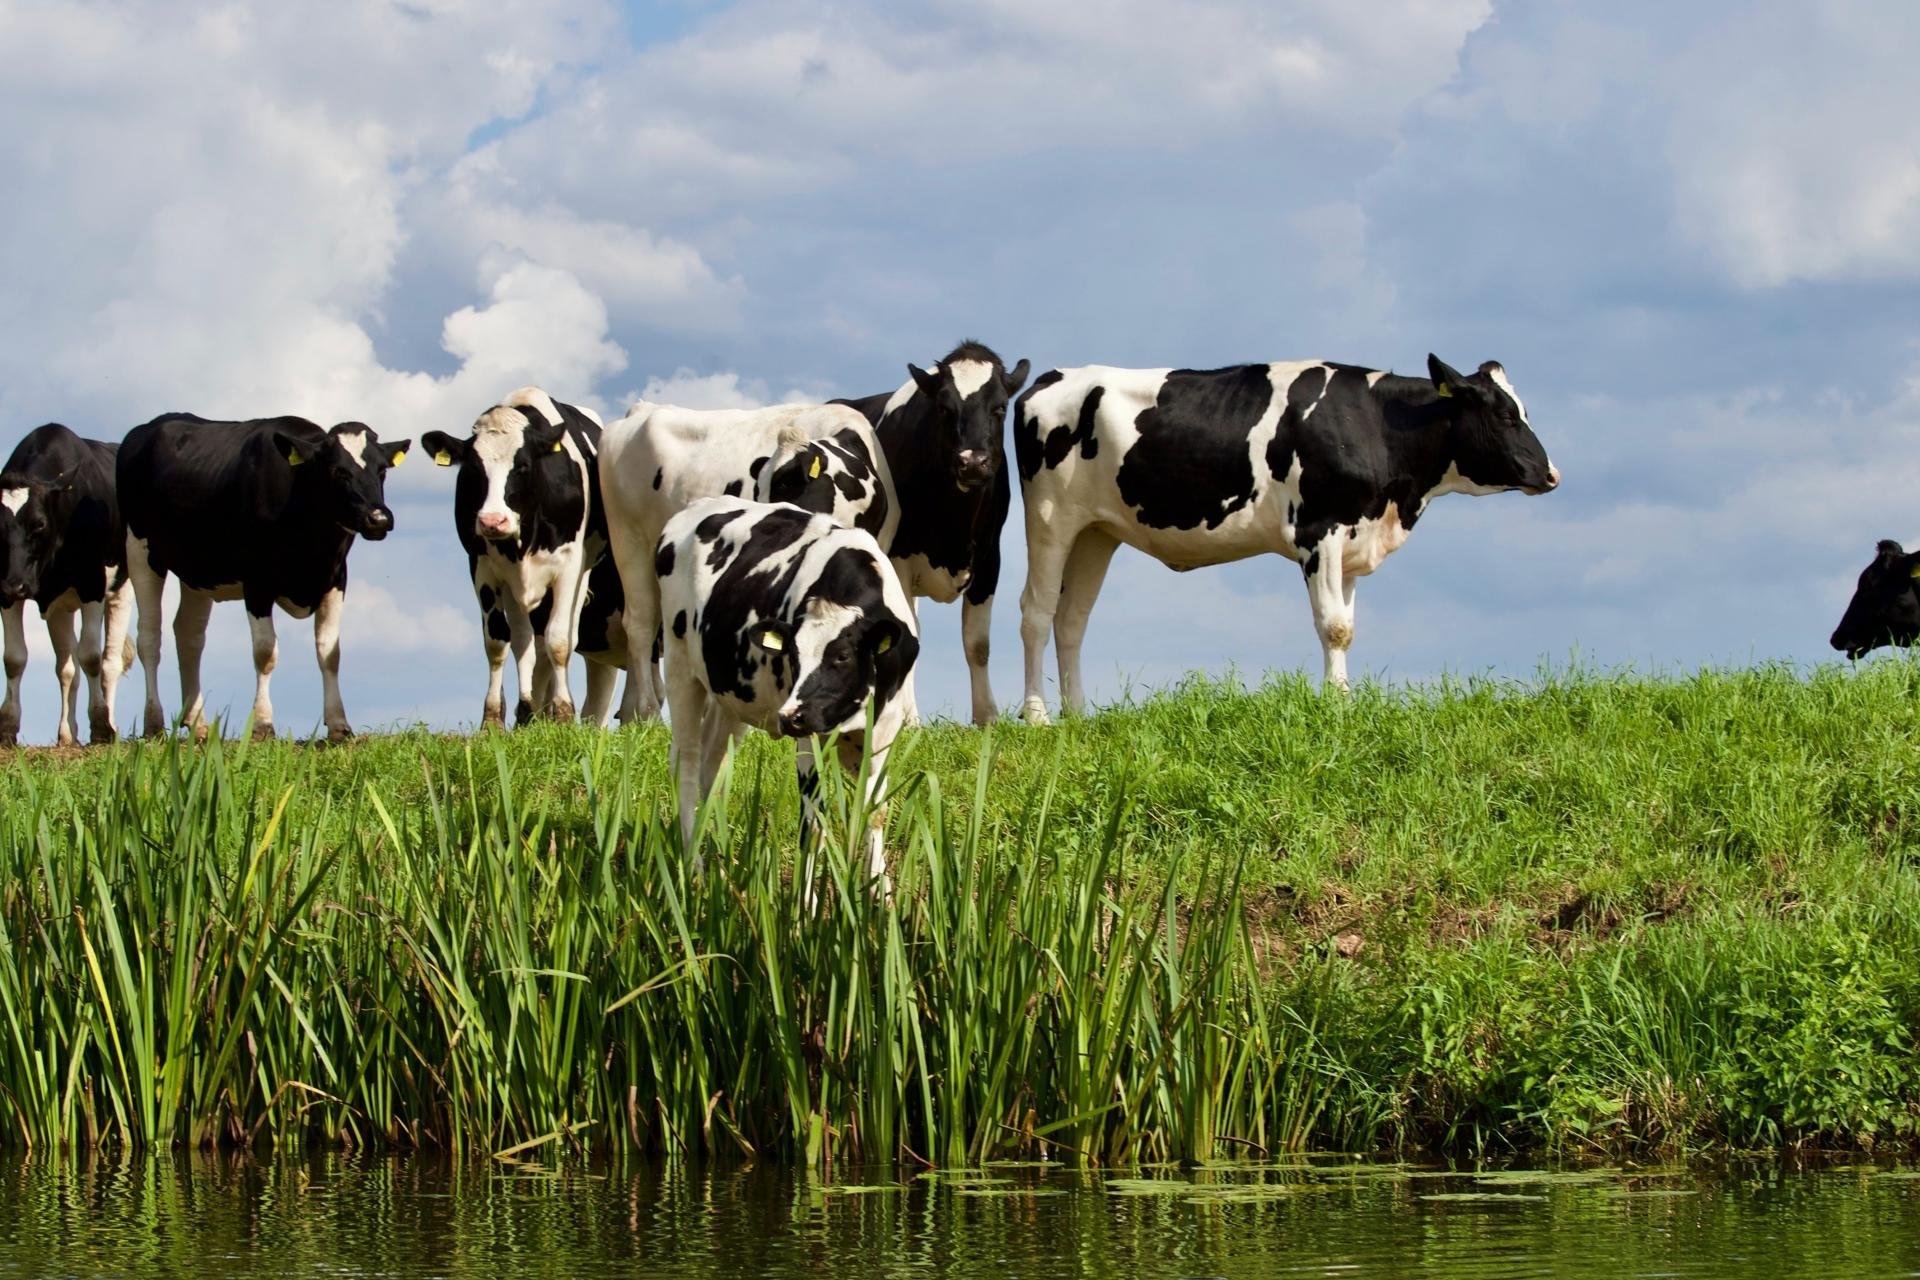 zwart witte koeien in een weiland aan het water.